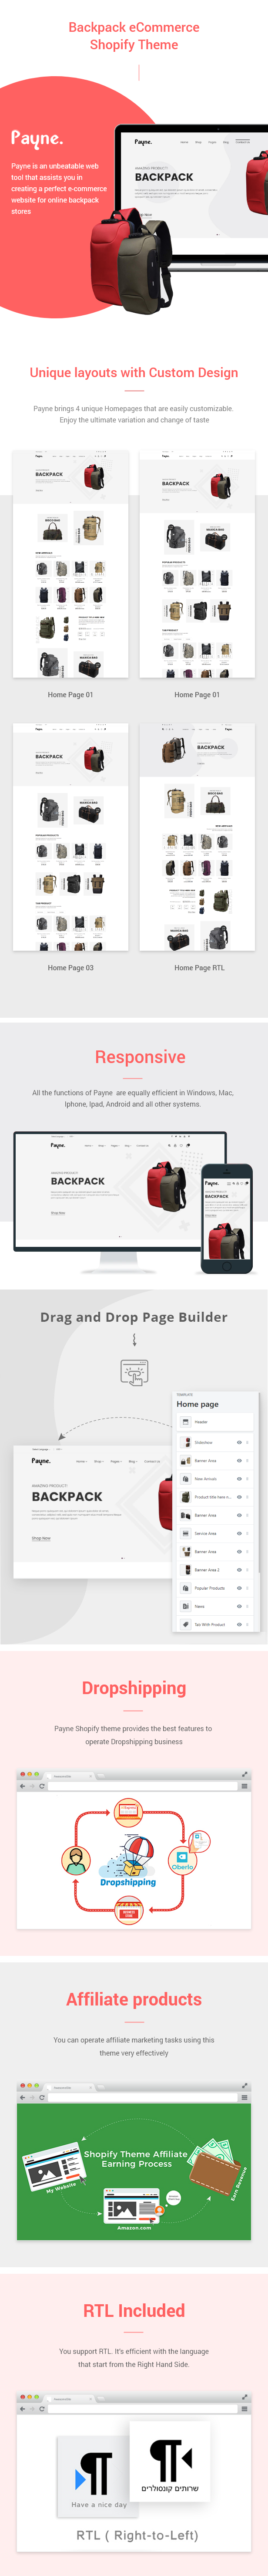 Payne - Backpack eCommerce Shopify Theme - 2